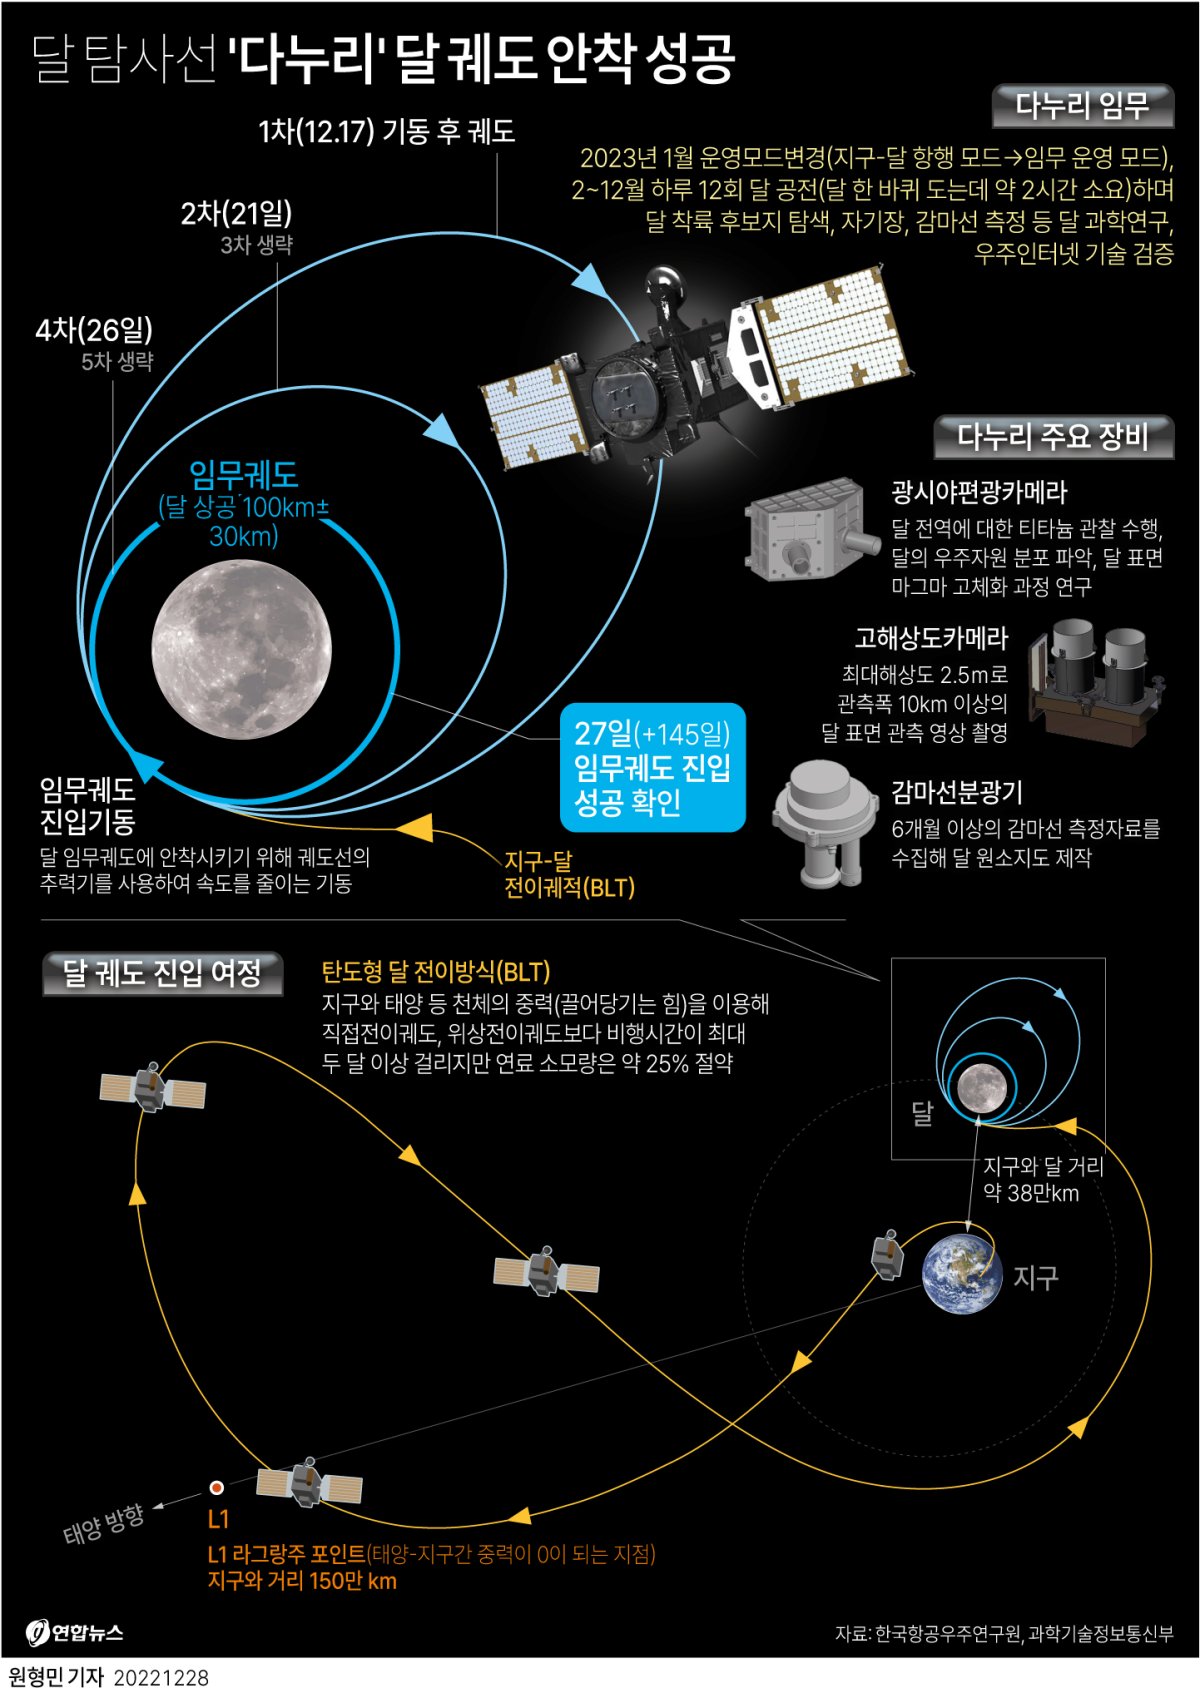 [그래픽] 달 탐사선 '다누리' 달 궤도 안착 성공